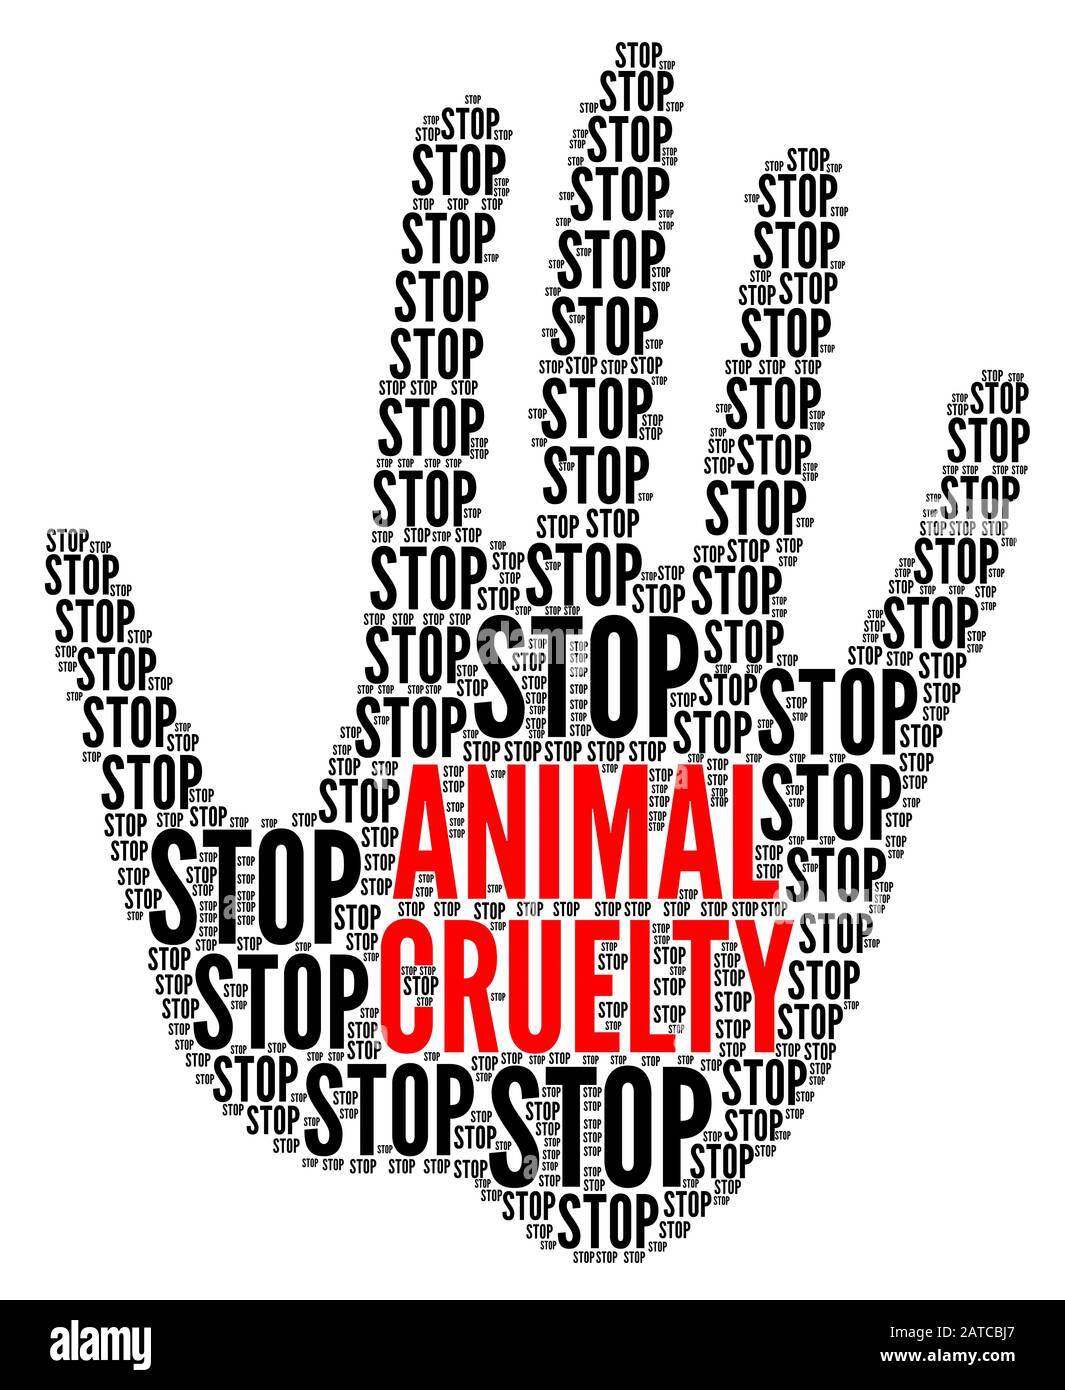 Stop animal cruelty symbol Stock Photo - Alamy